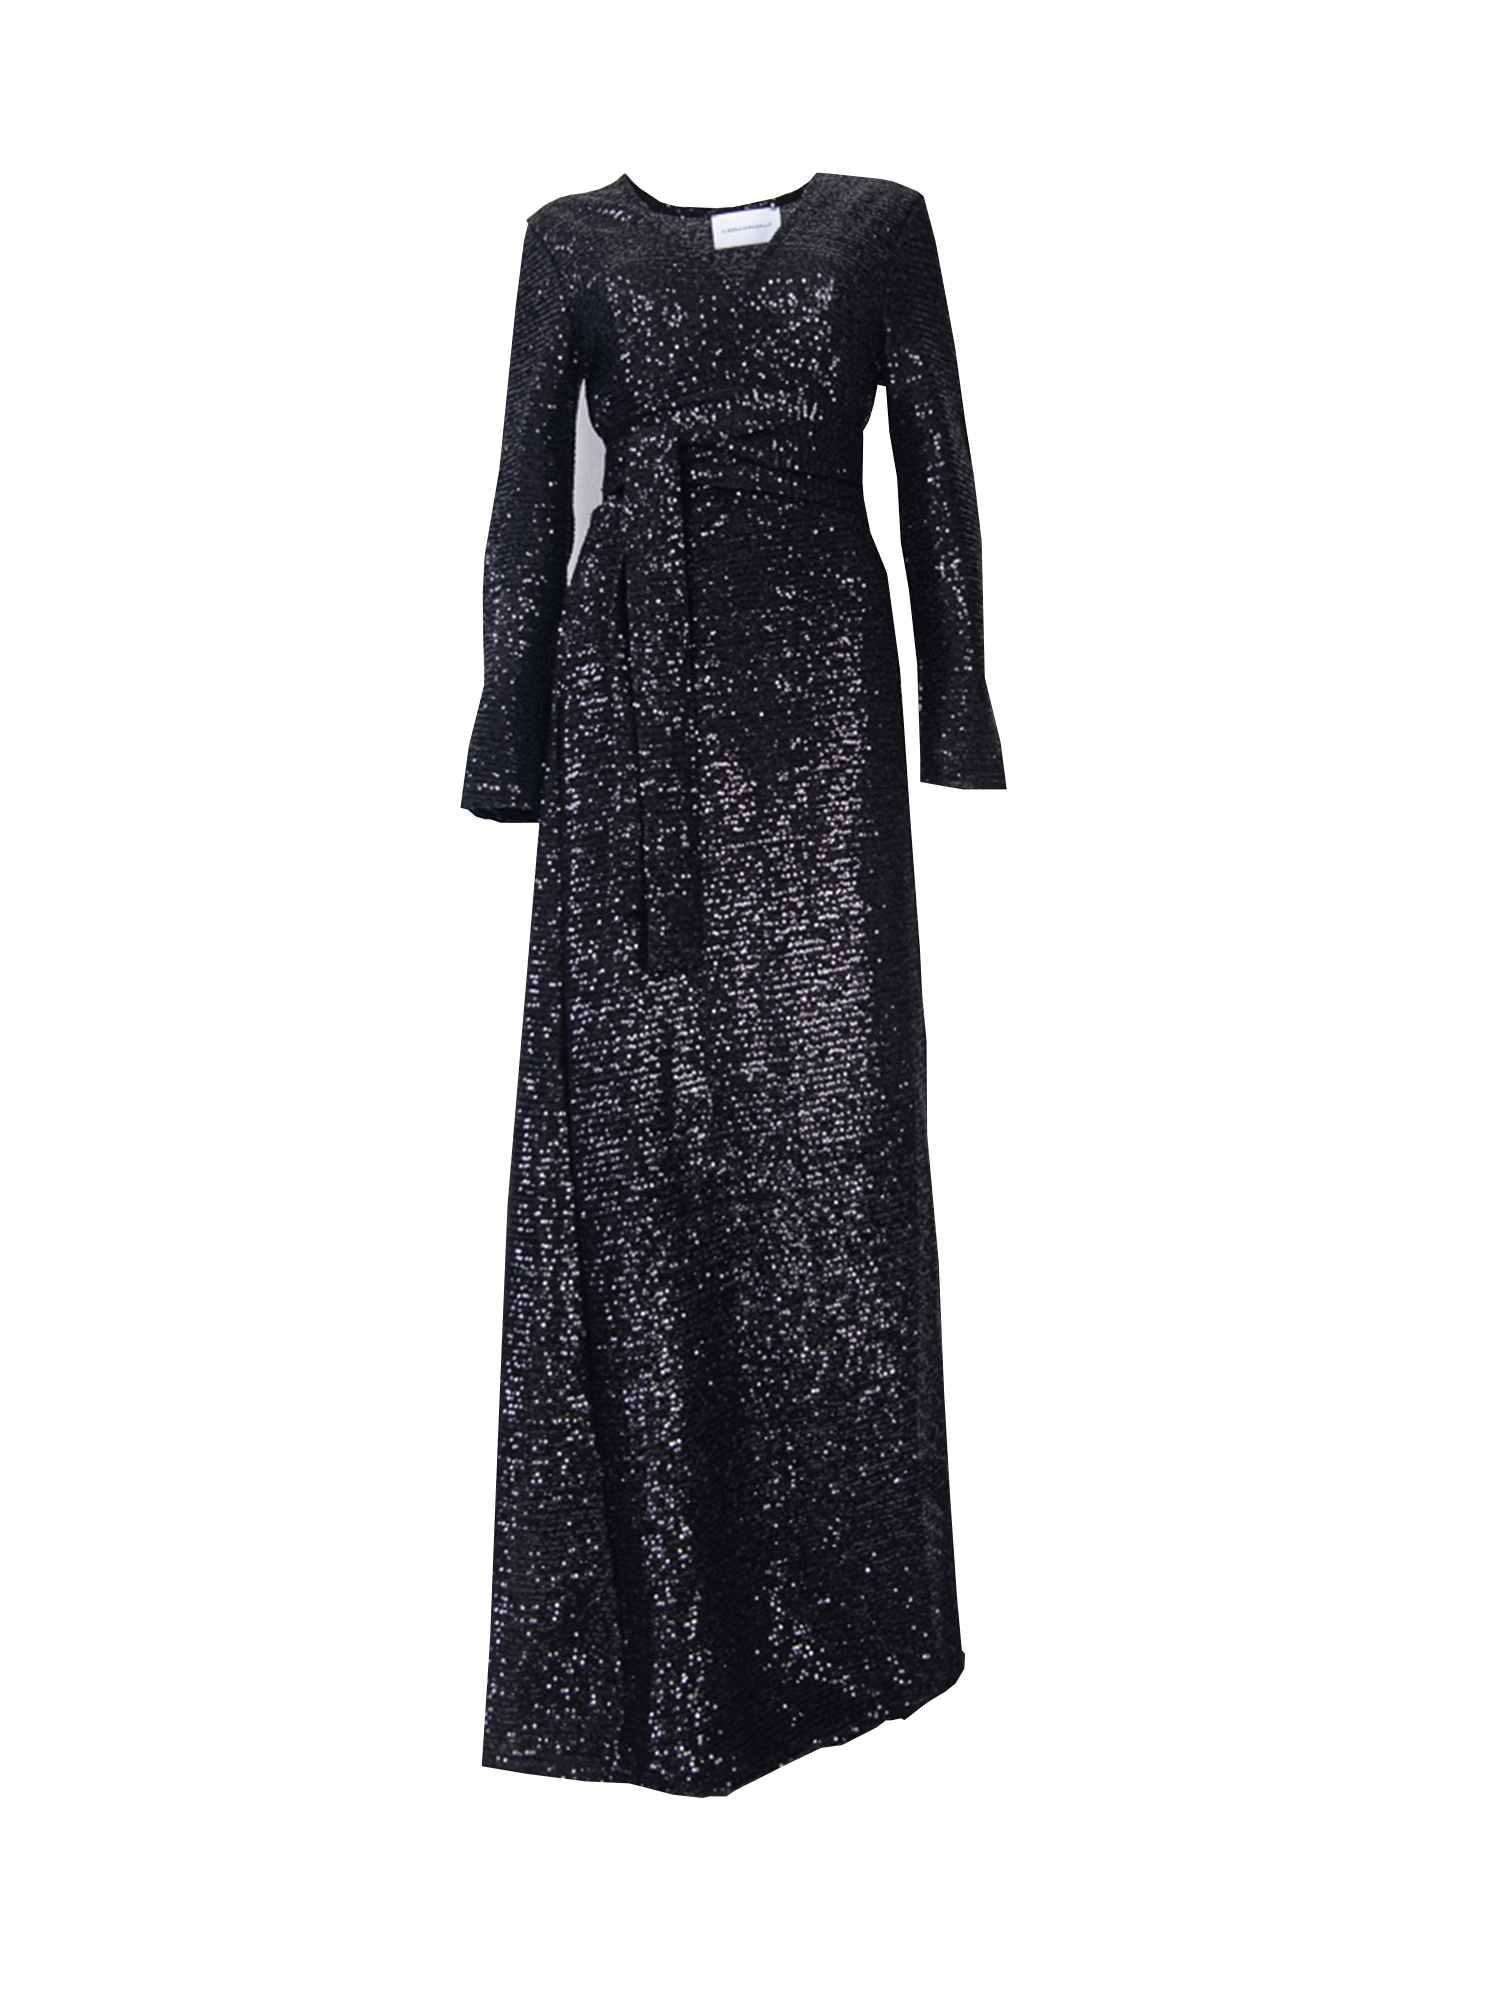 LETIZIA - long black sequin dress